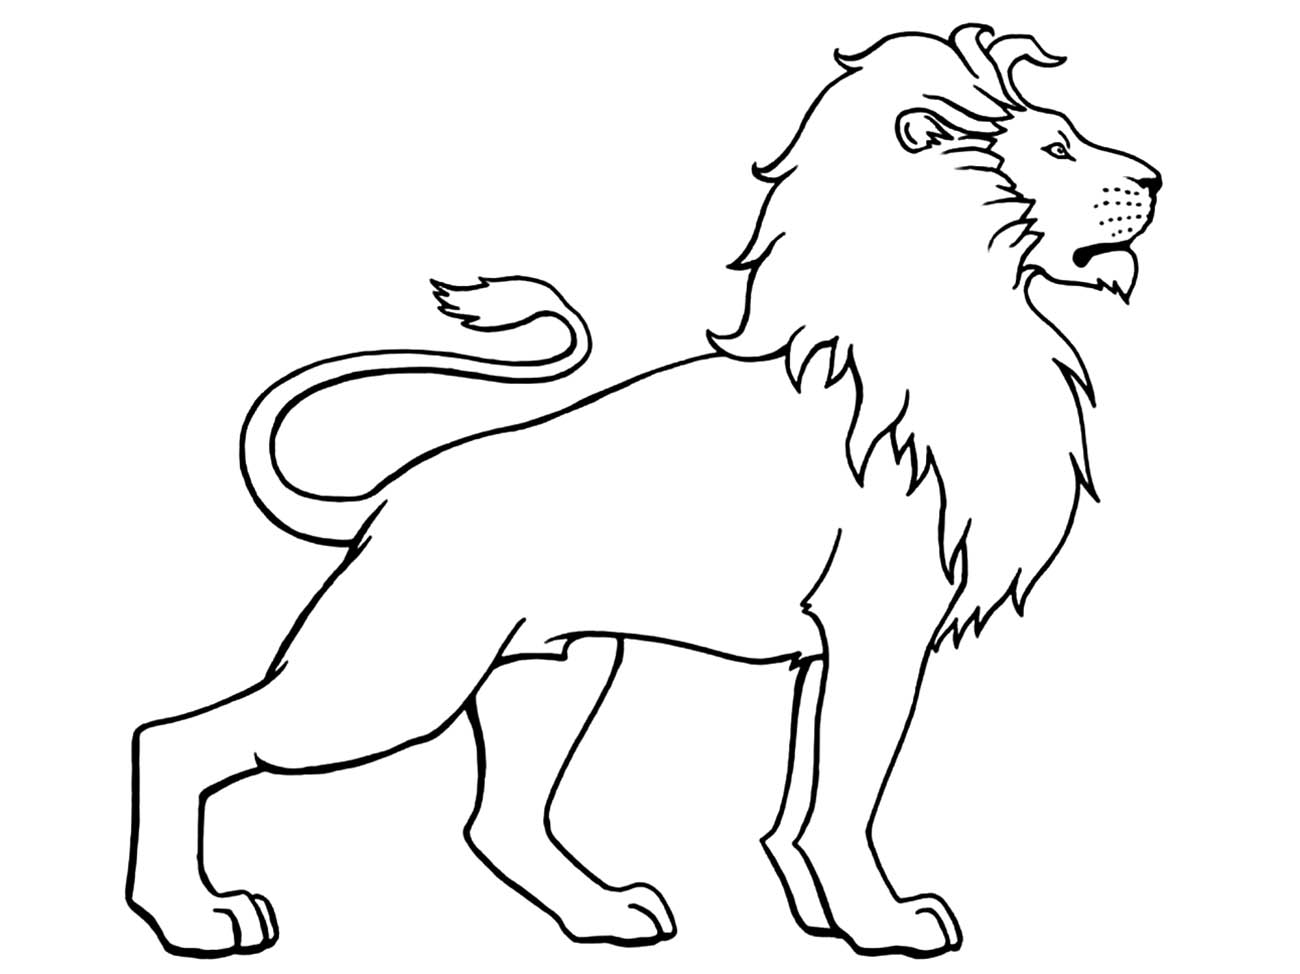 Xem hơn 100 ảnh về hình vẽ sư tử ngầu - daotaonec